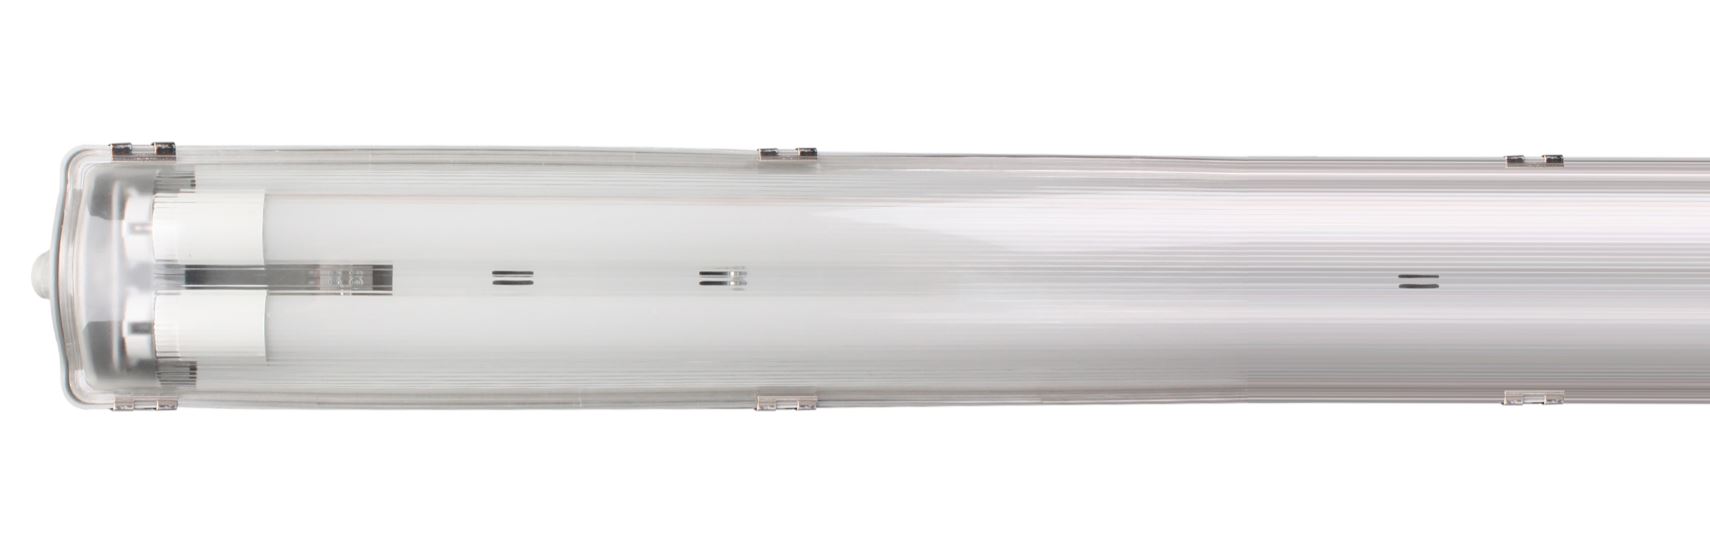 Réglette étanche Aqua-Promo 2 tubes LED L120 2X18W - MULLER LICHT